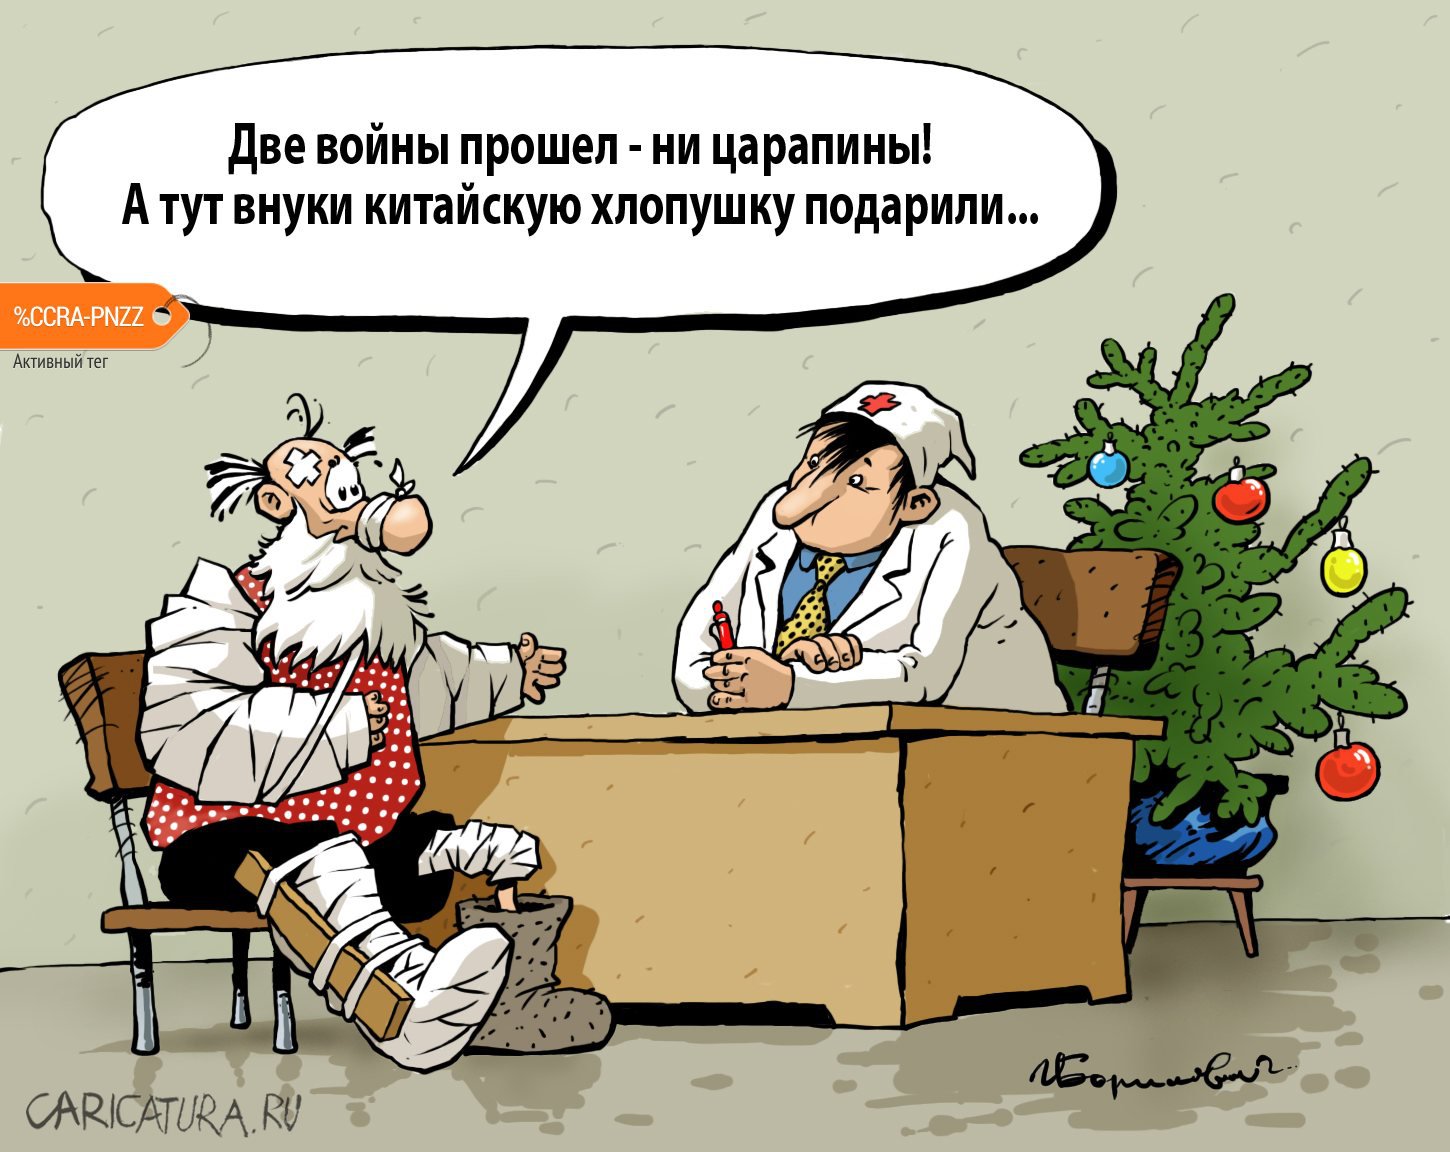 Карикатура "Китайская хлопушка", Игорь Елистратов